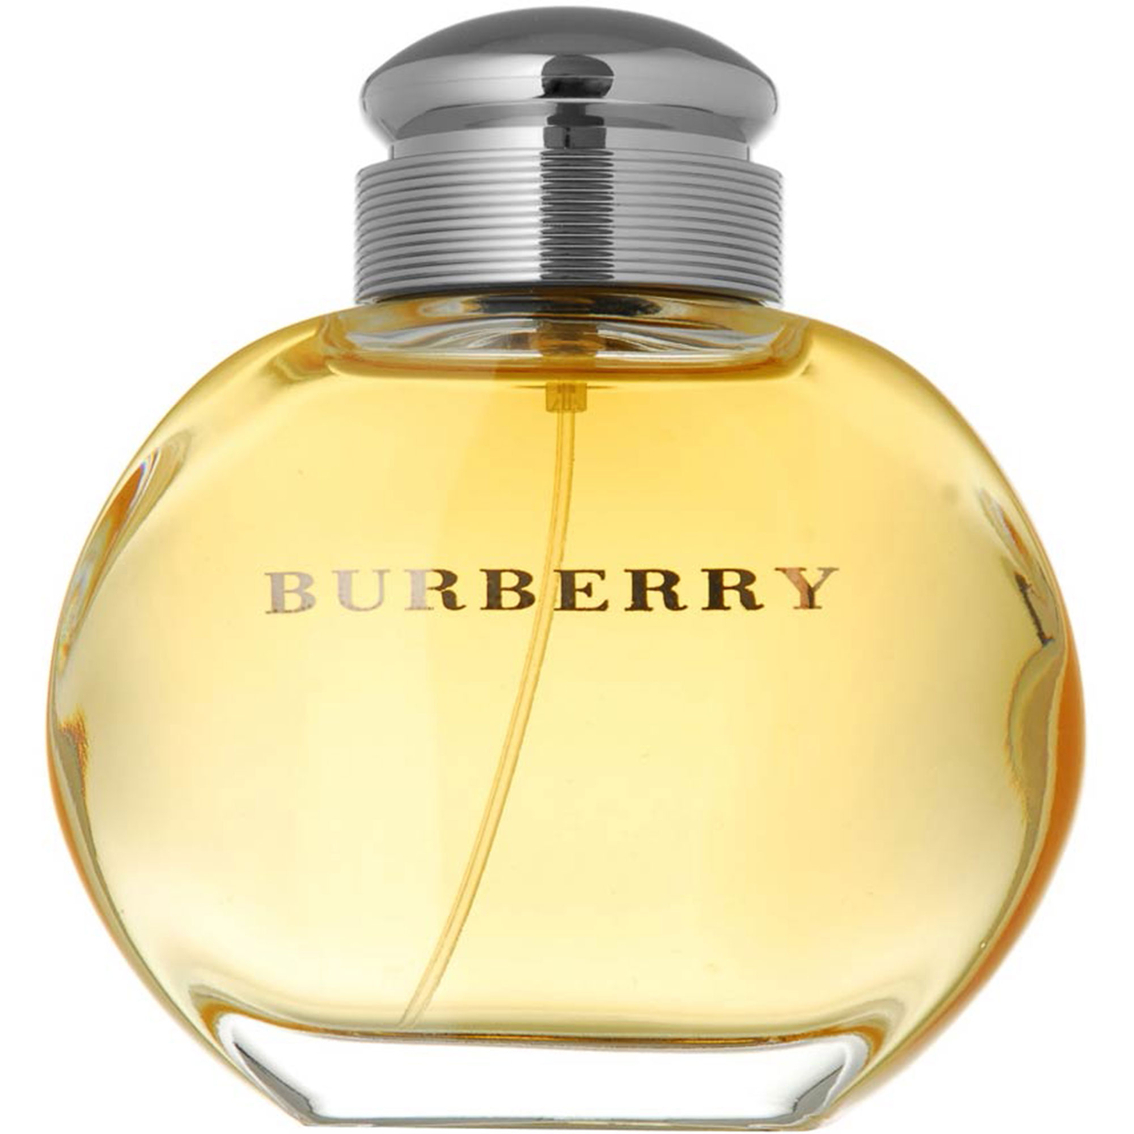 burberry eau de parfum 1.7 fl oz